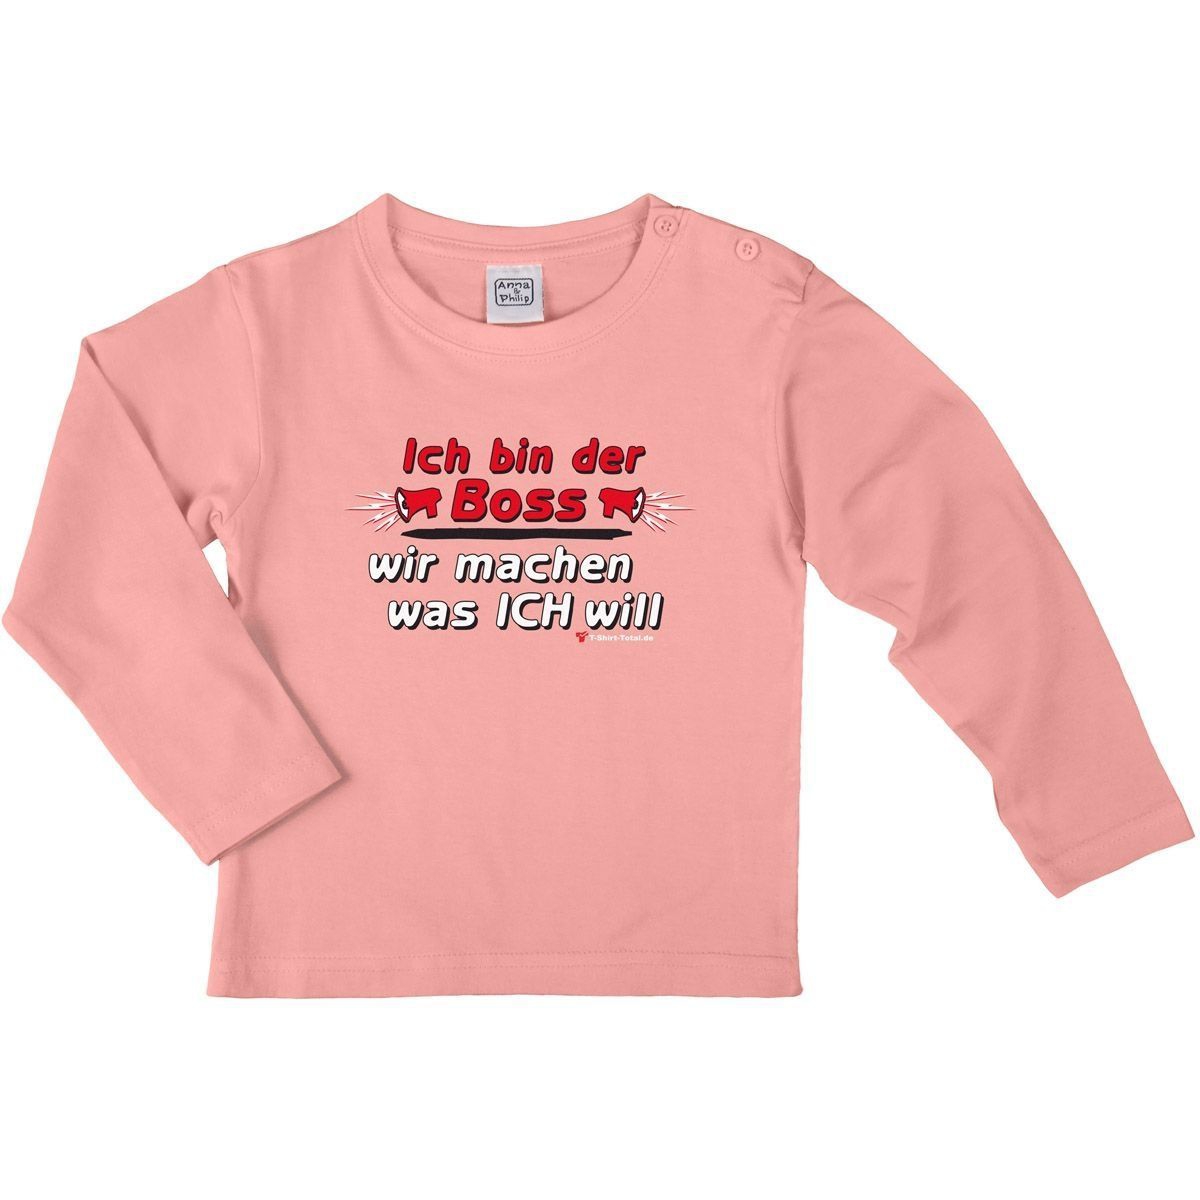 Ich bin der Boss Kinder Langarm Shirt rosa 122 / 128